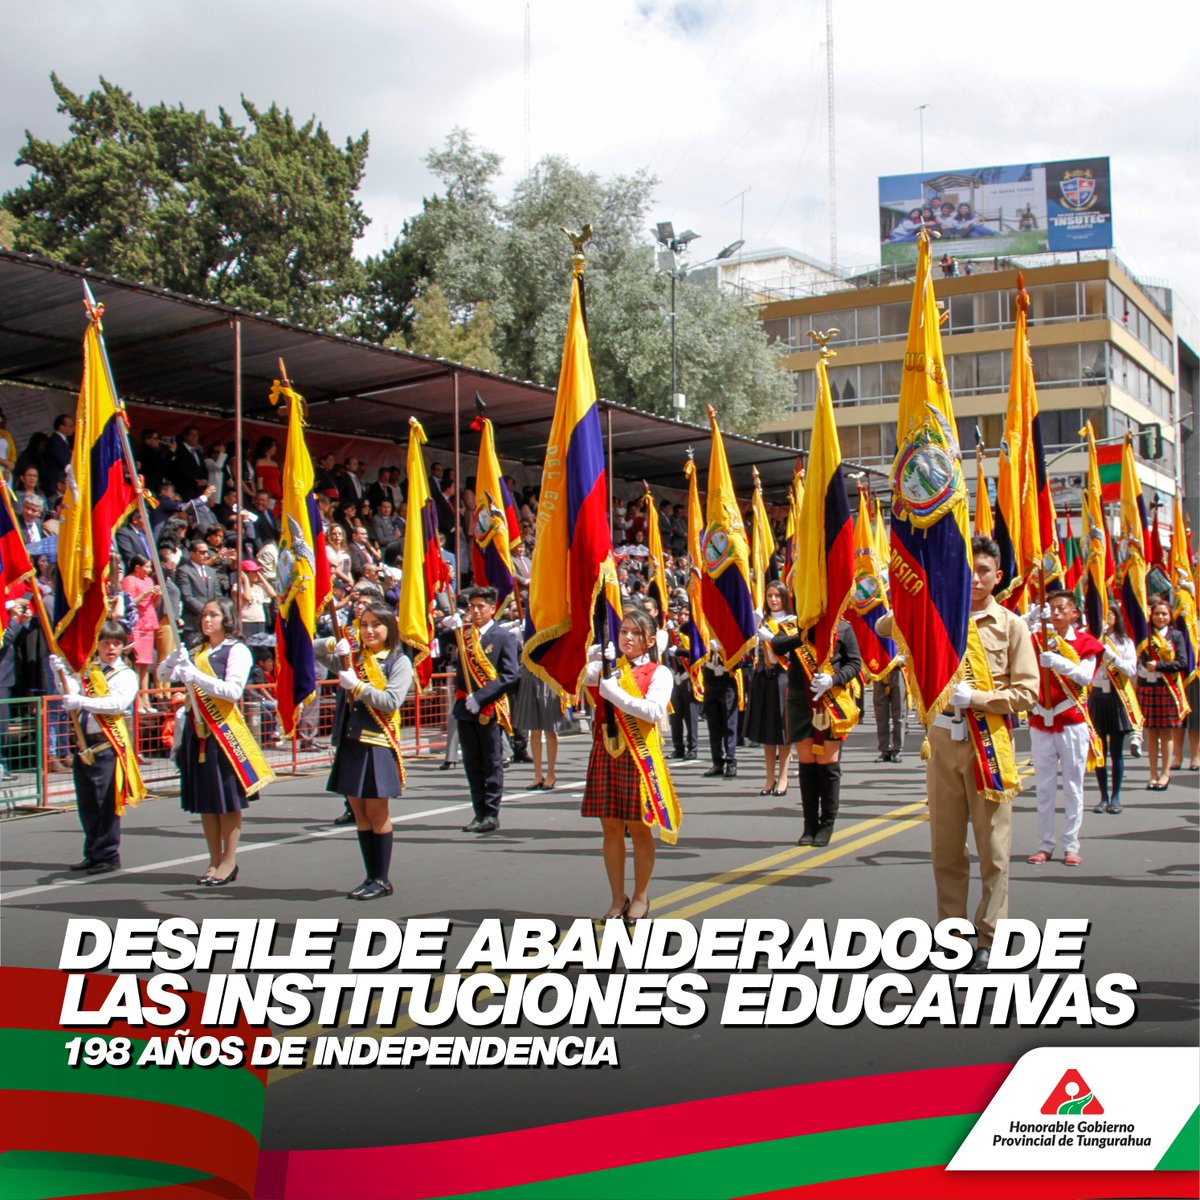 Gobierno Tungurahua Auf Twitter Felicitamos A Los Abanderados De